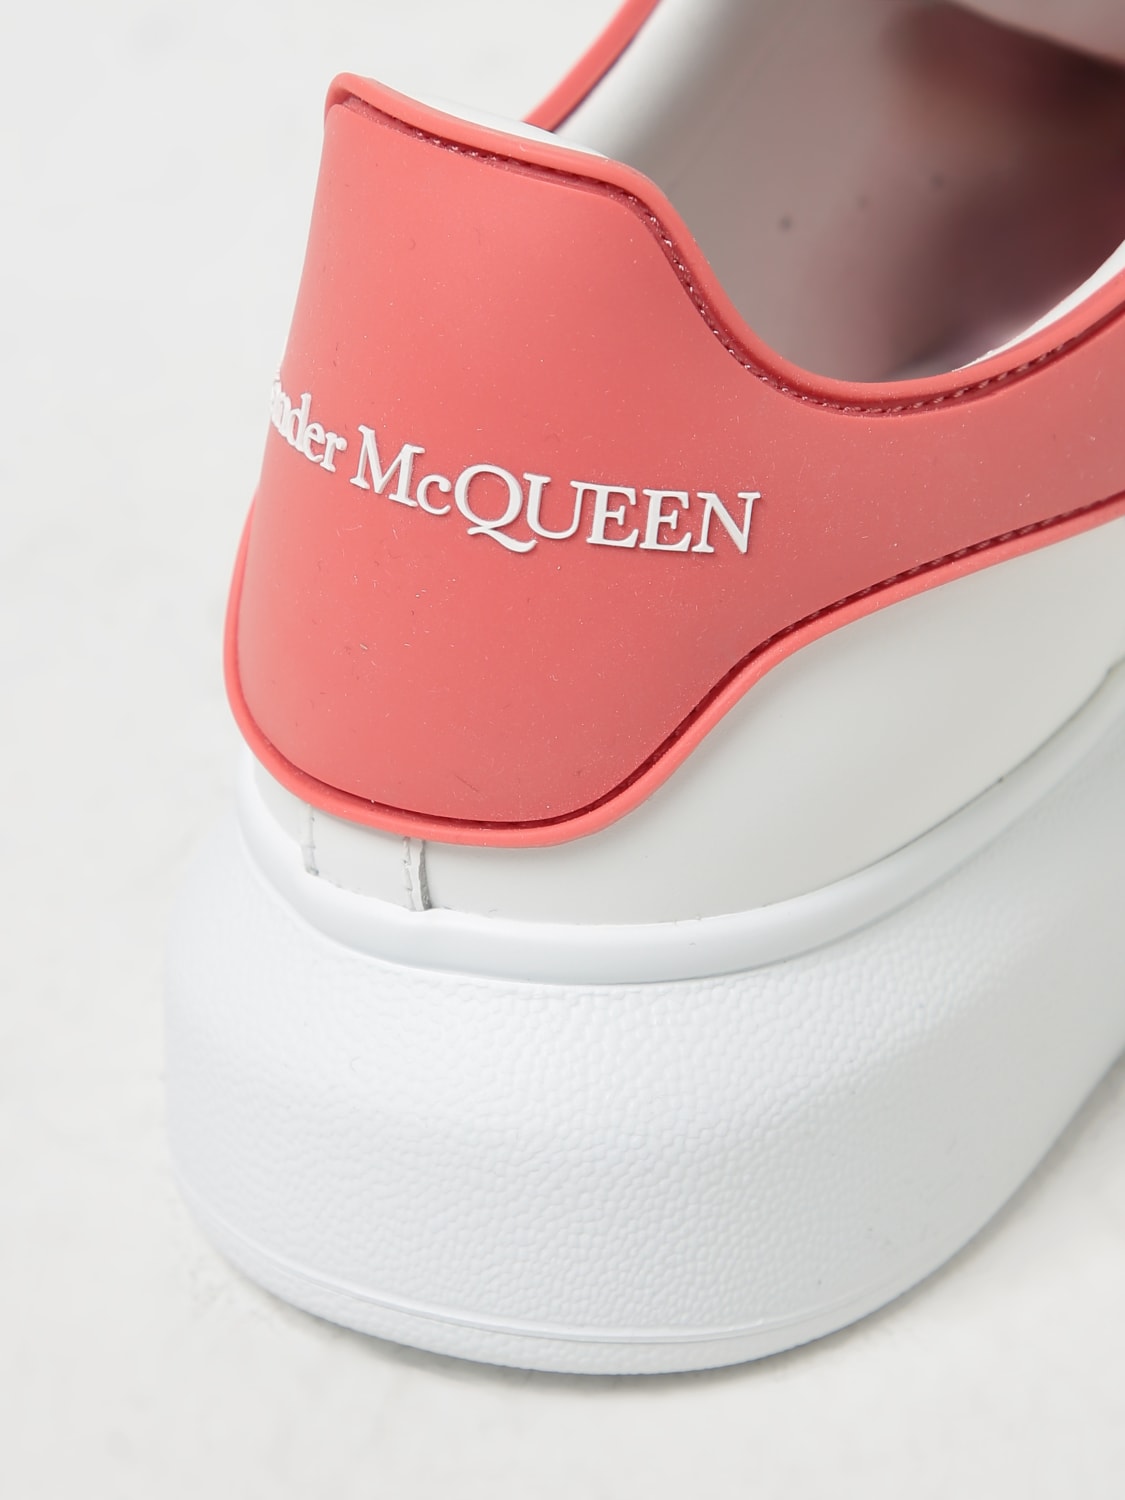 Who is Alexander McQueen, How to style Alexander McQueen Sneakers